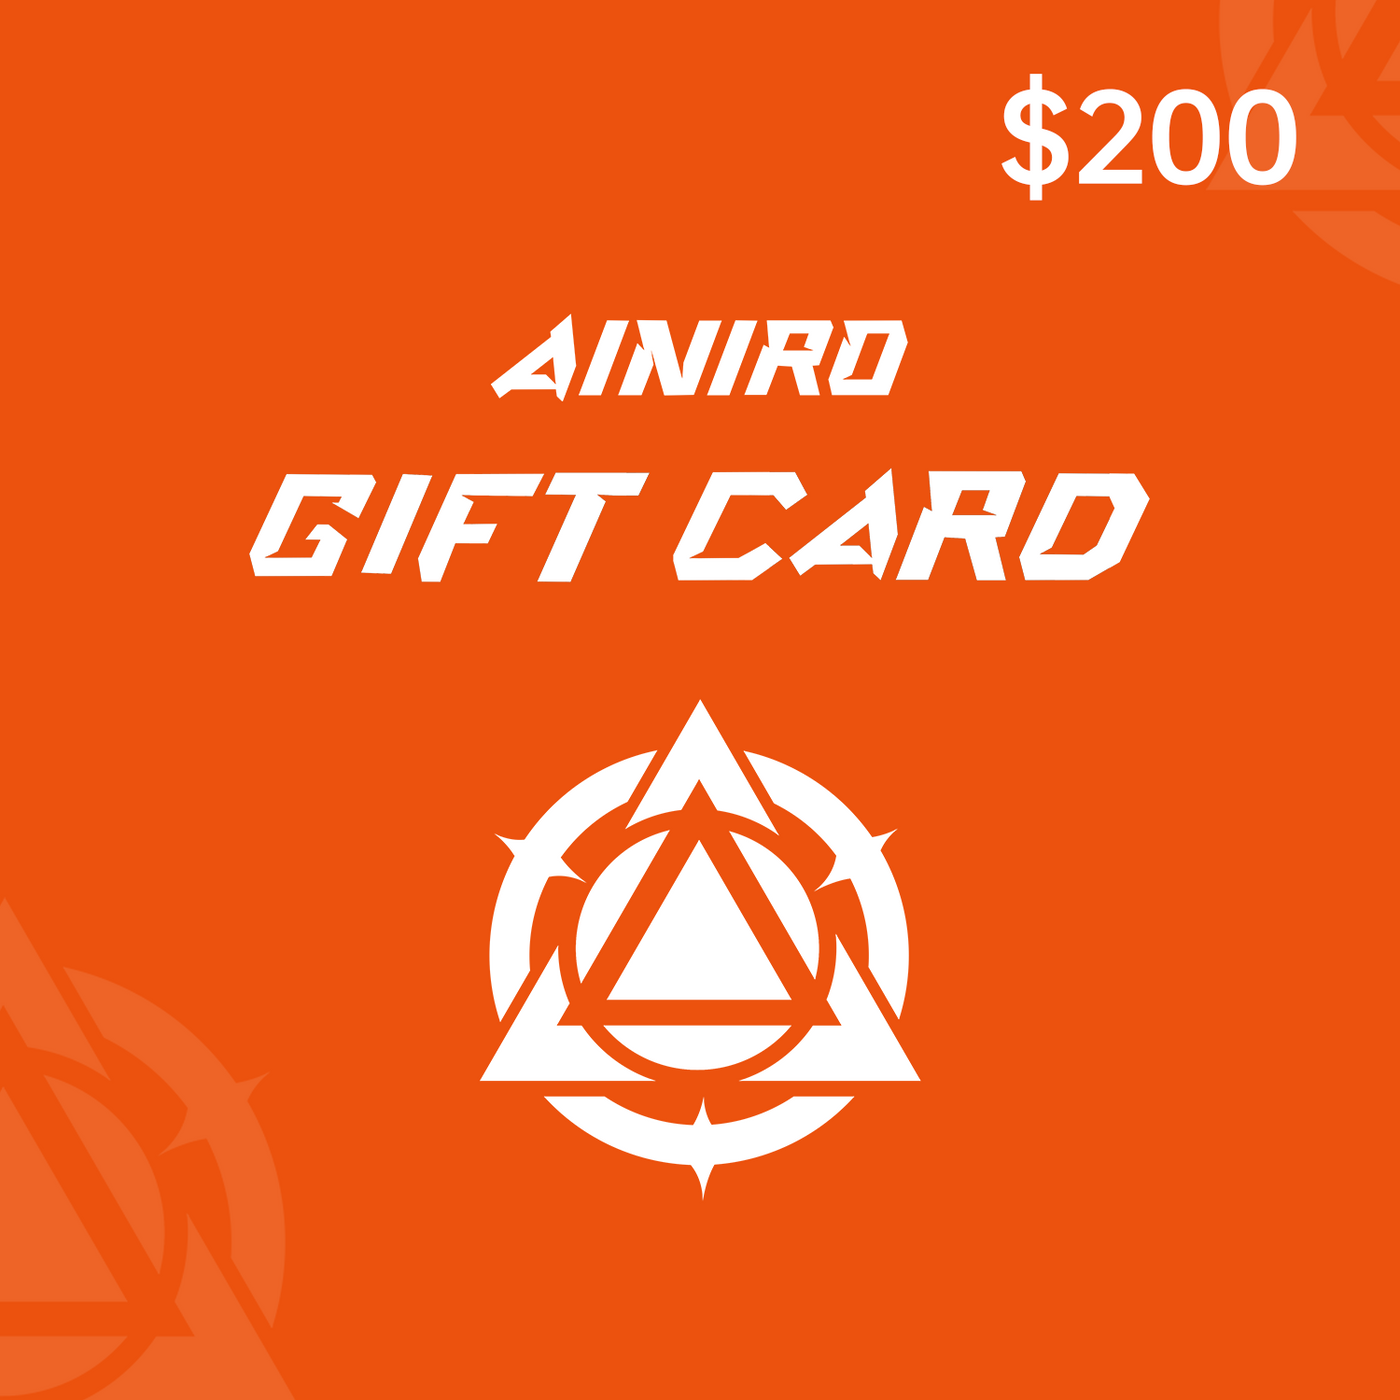 AINIRO Gift Card